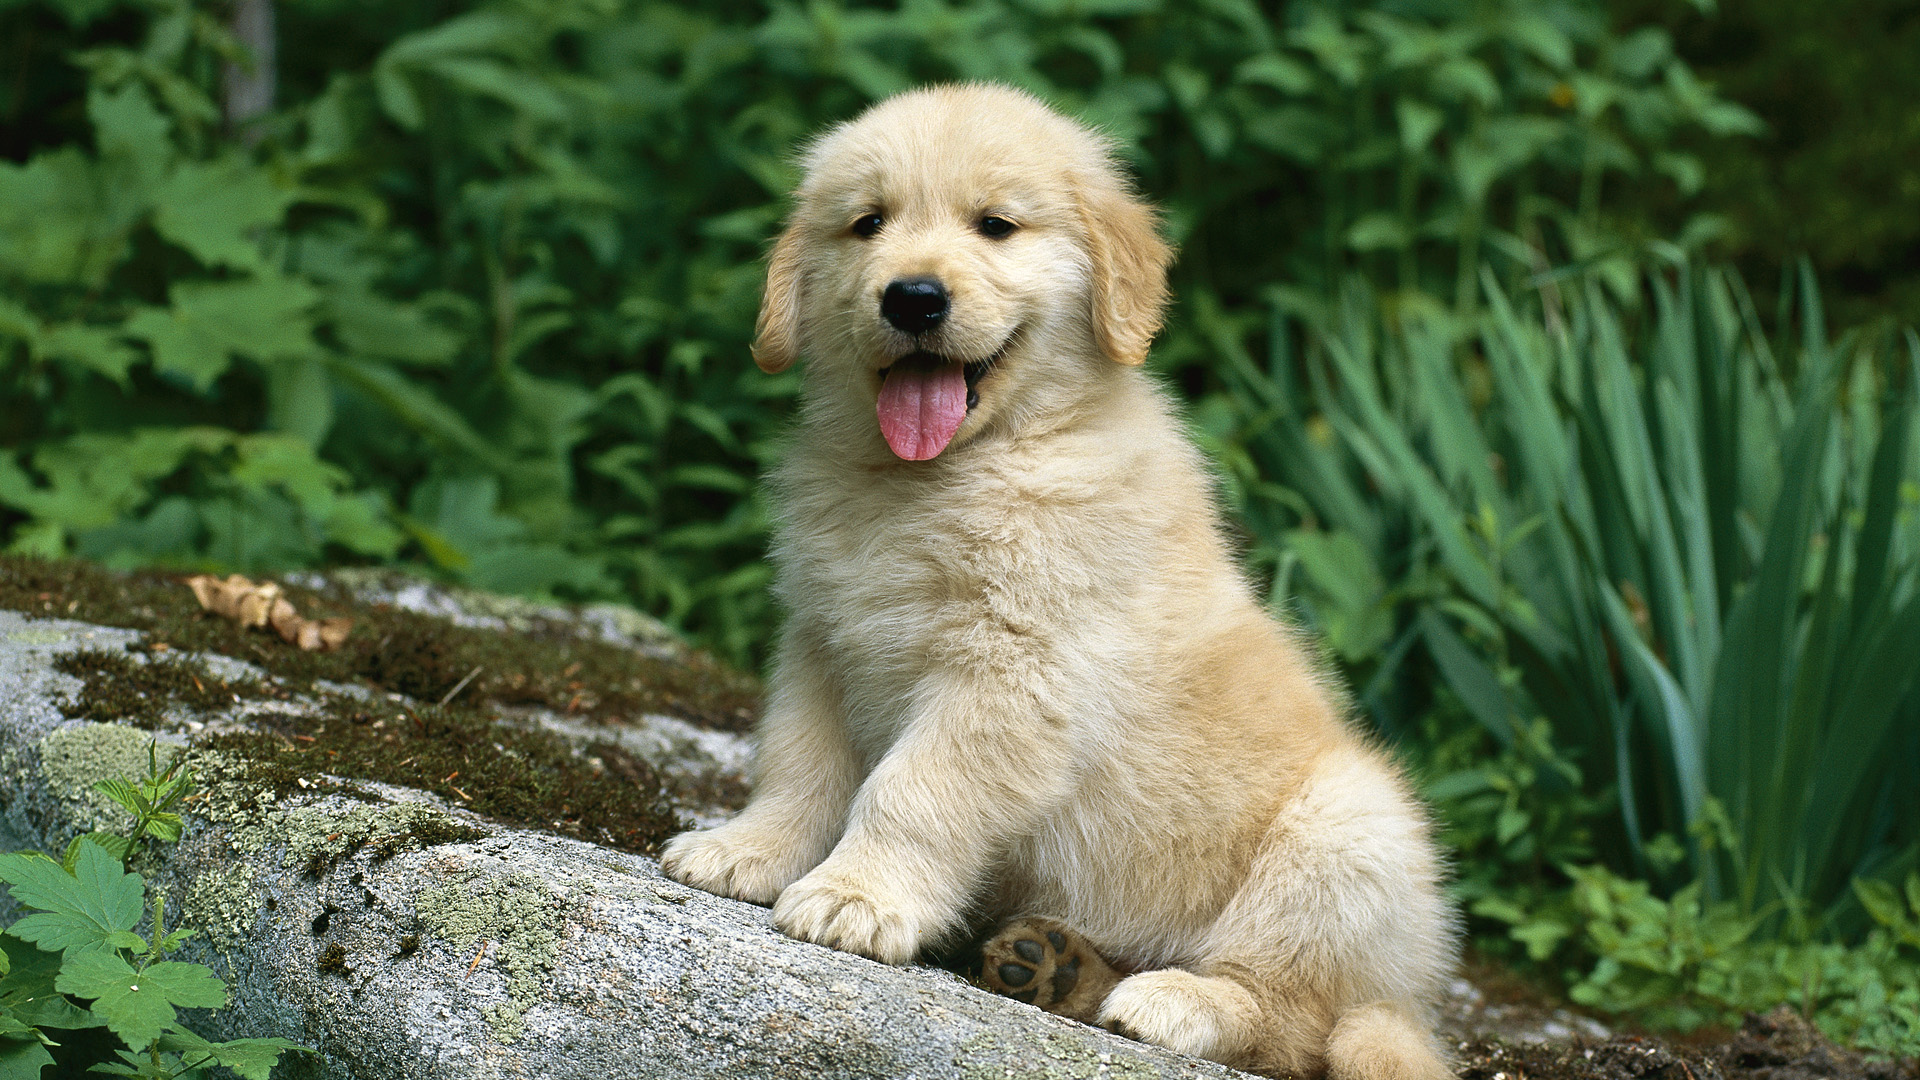 Golden Retriever Puppies Backgrounds - Wallpaper, High Definition, High Quality, Widescreen